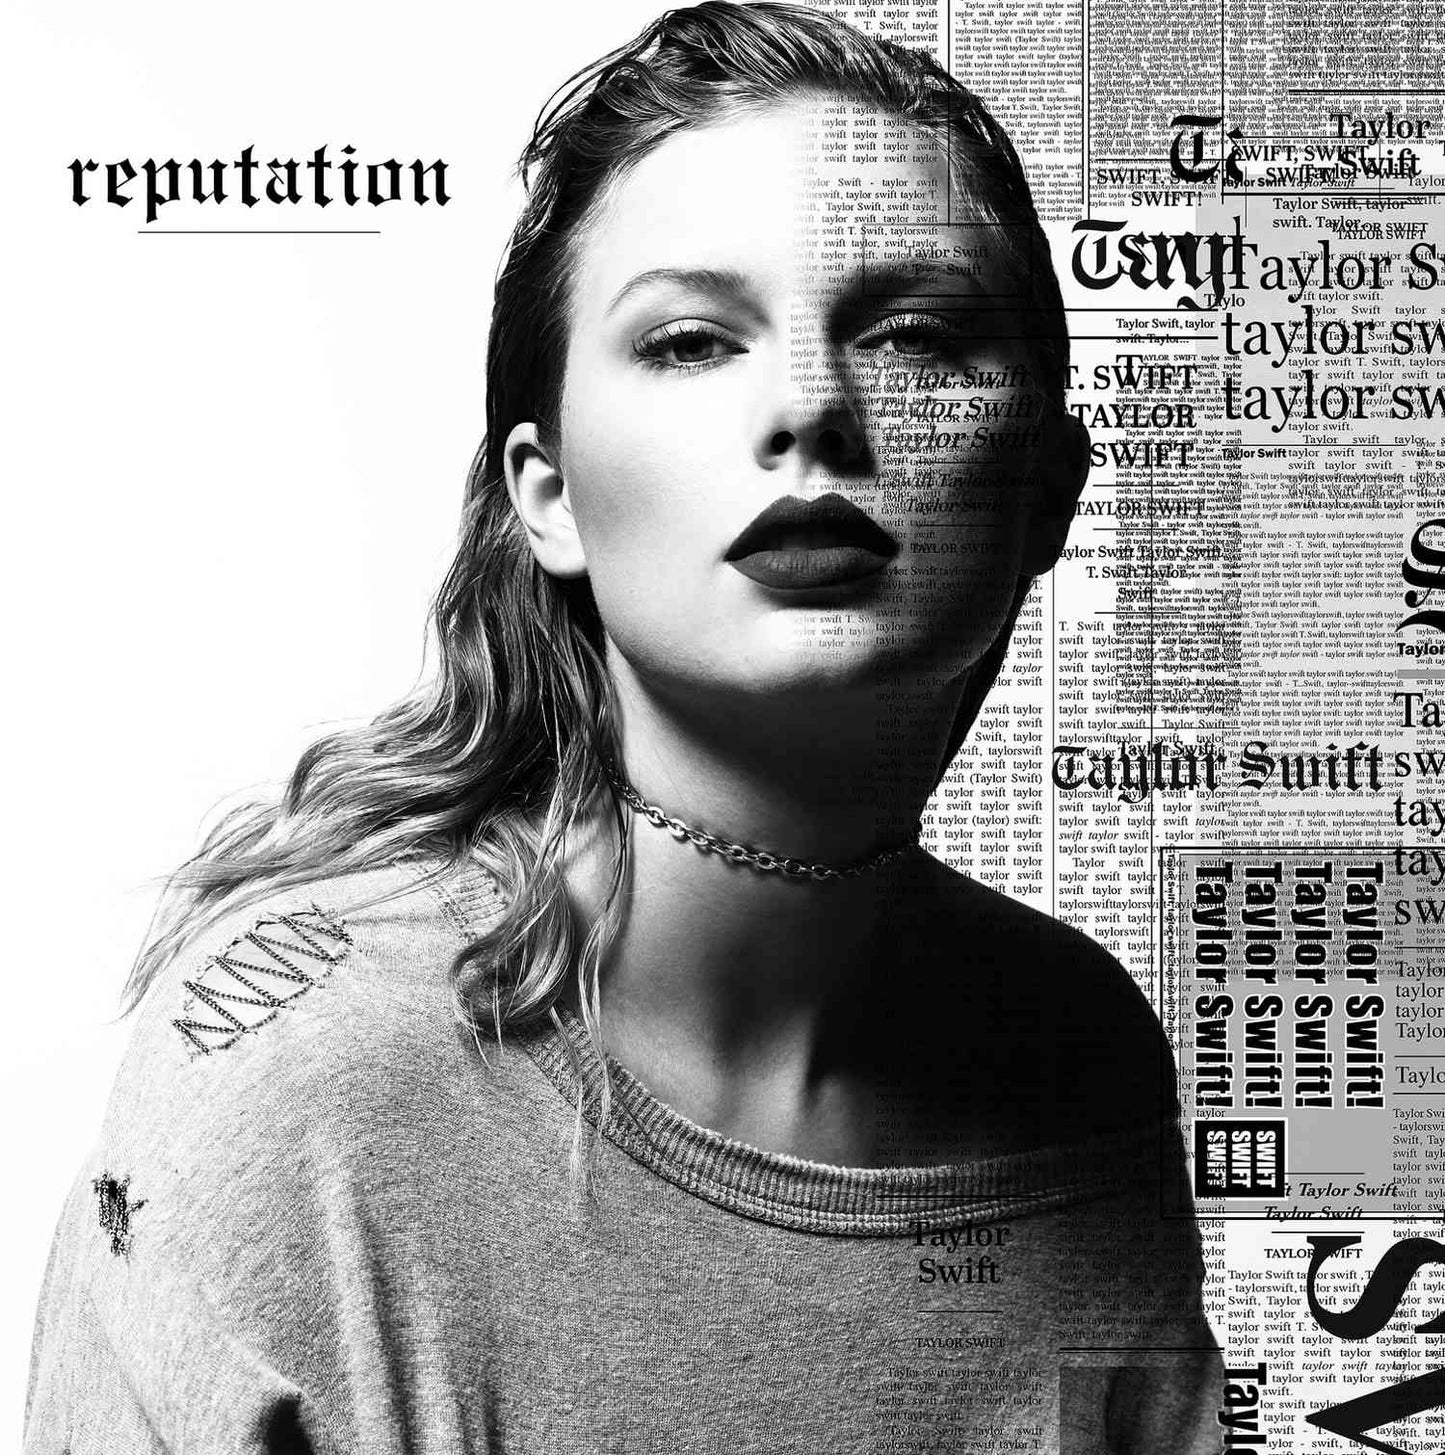 Reputation - Taylor Swift Picture Disc 2 LP Vinyl